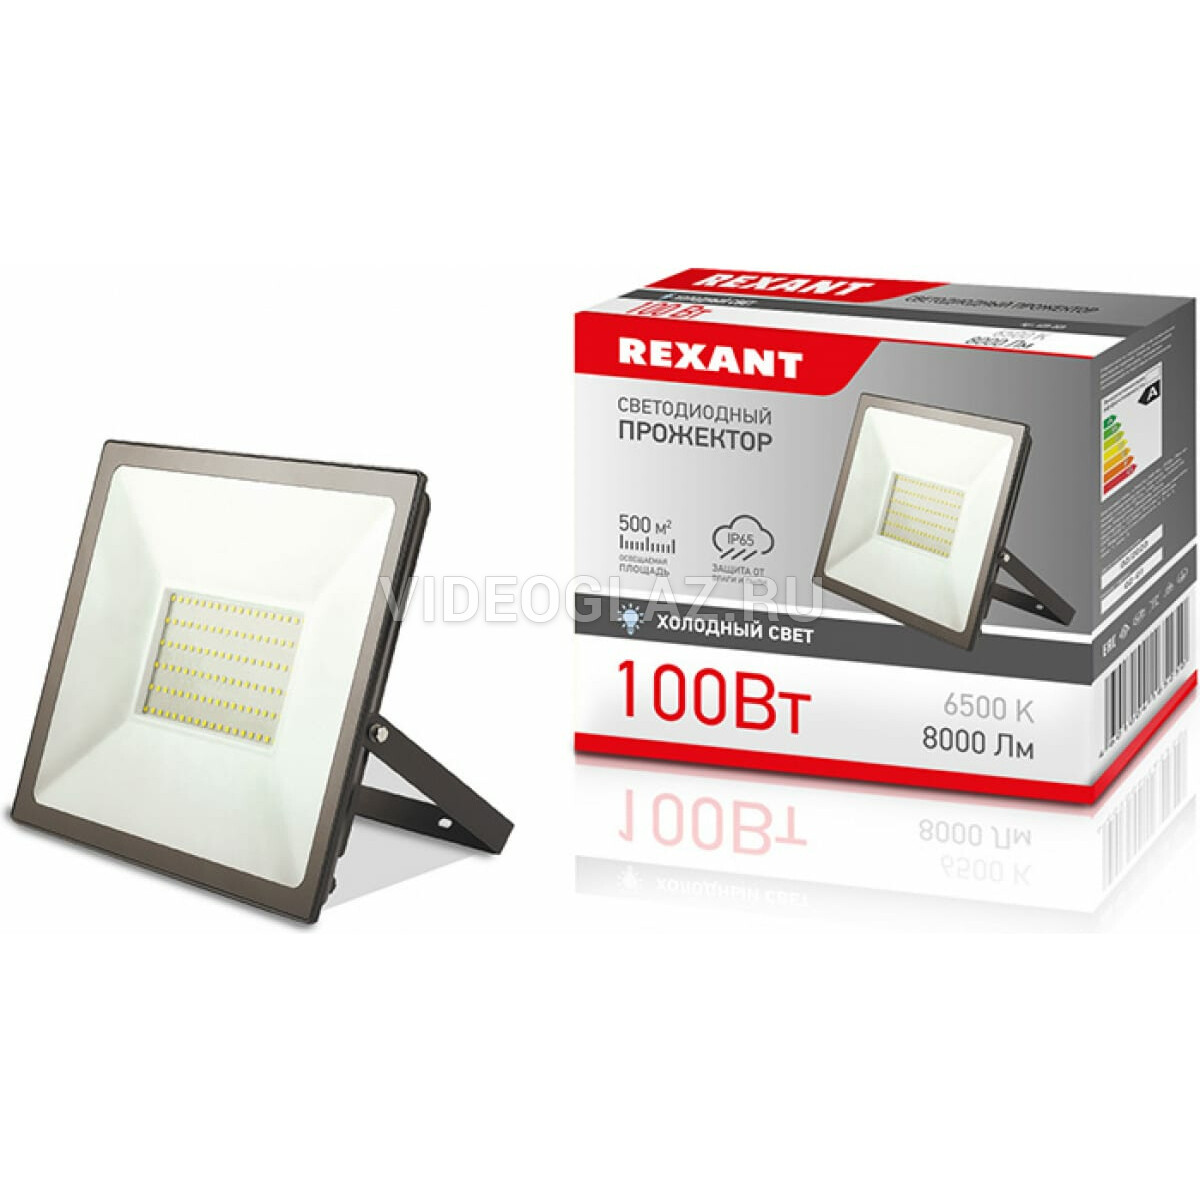 Прожектор светодиодный 8000лм. Прожектор светодиодный Rexant 150вт 200-260в ip65 12000 лм 6500k 605-006. Прожектор Rexant 605-006. Rexant 605-005. Прожектор Rexant 605-011.